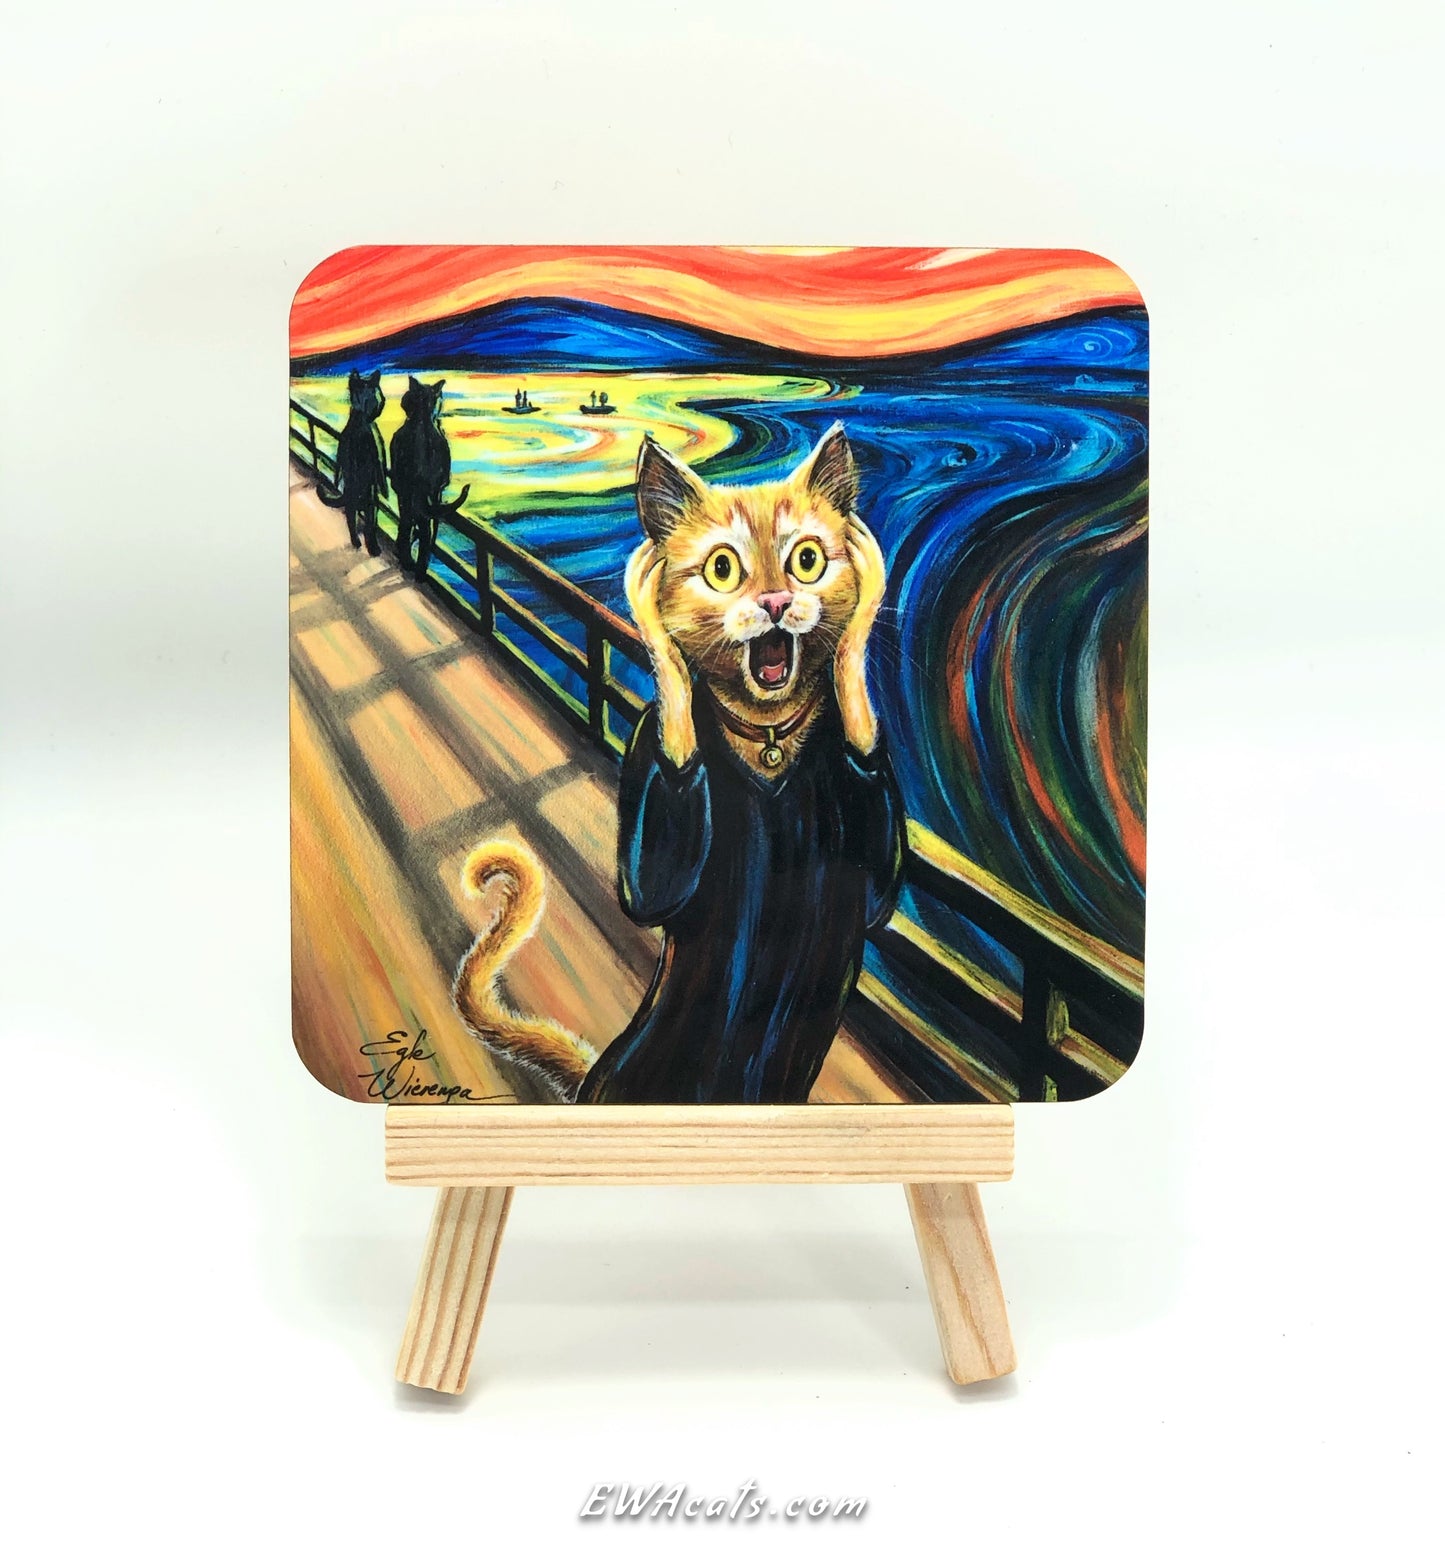 Coaster "The Cat Scream"